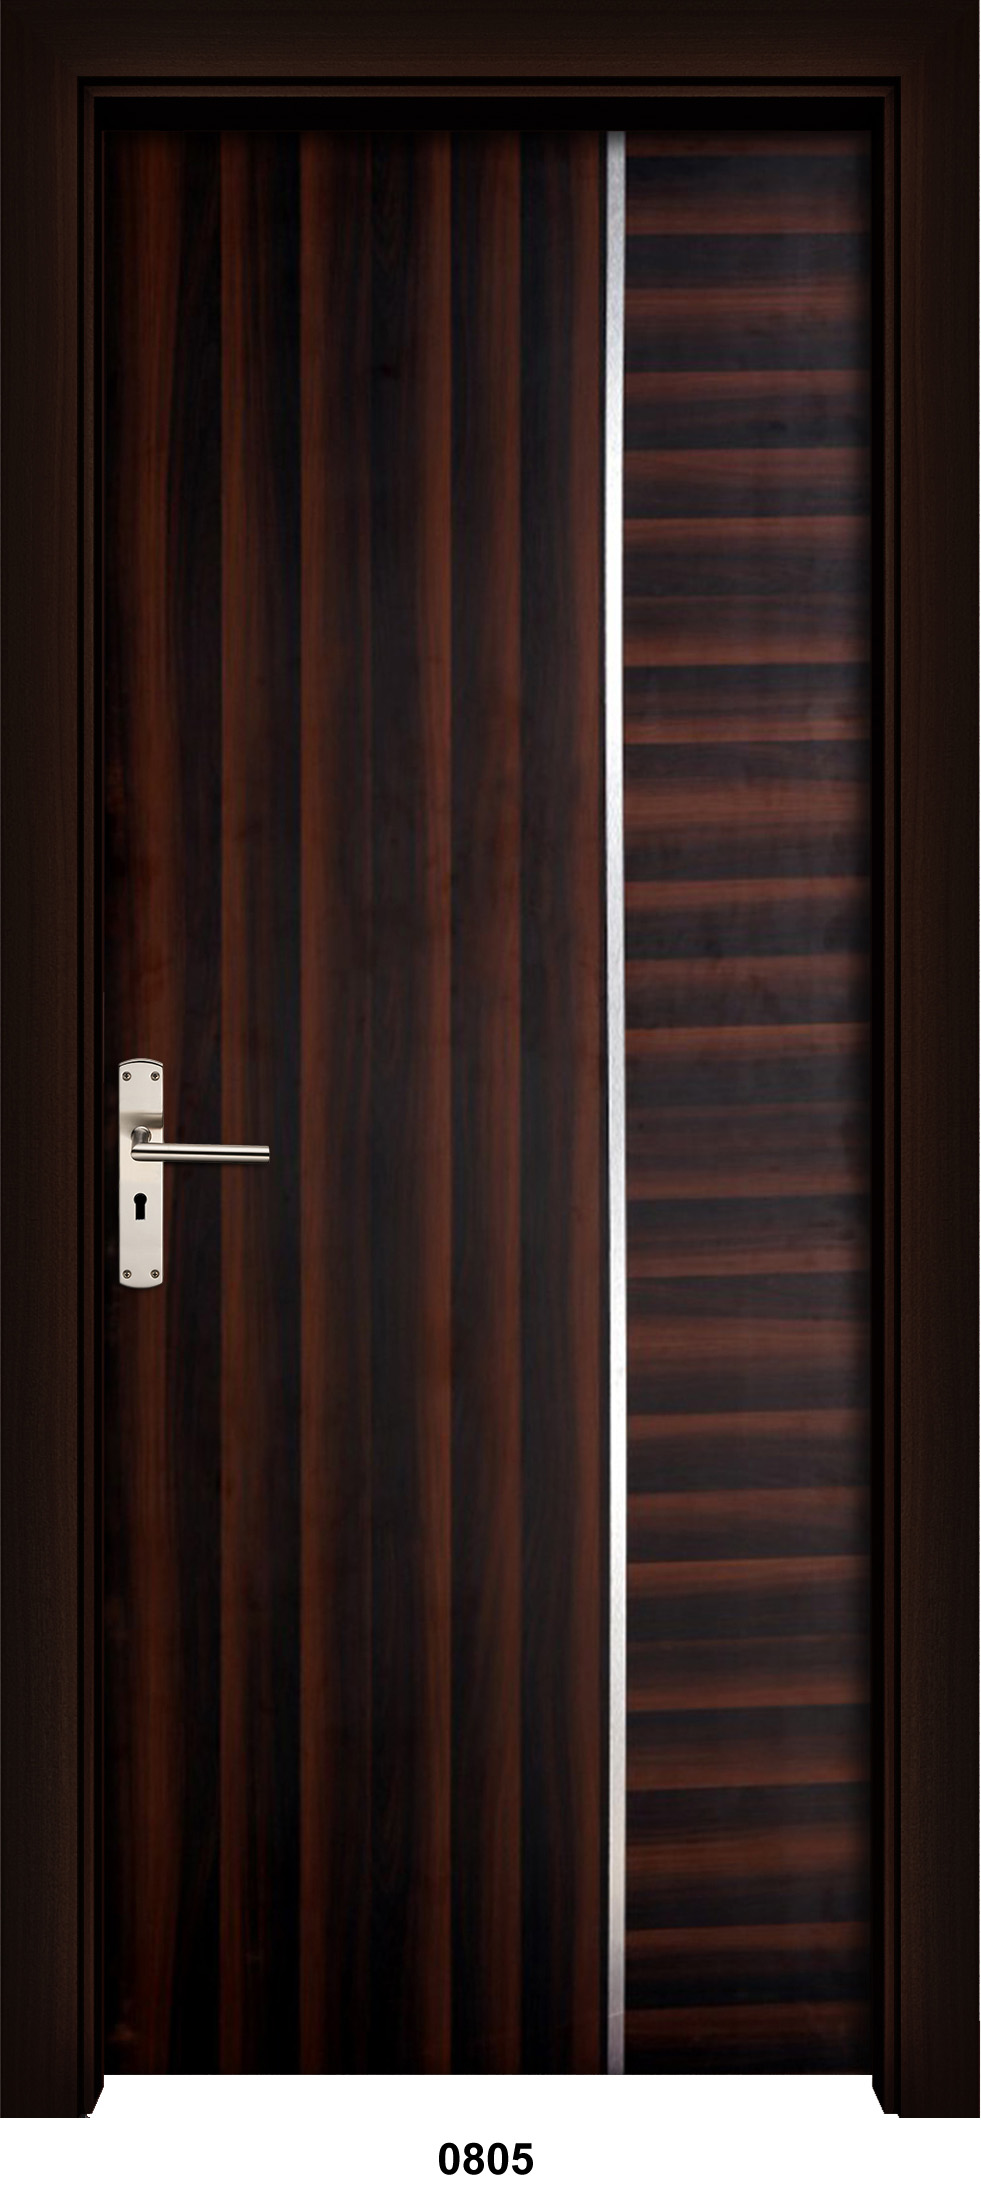 Laminated doors online, laminated door manufacturers, laminated door